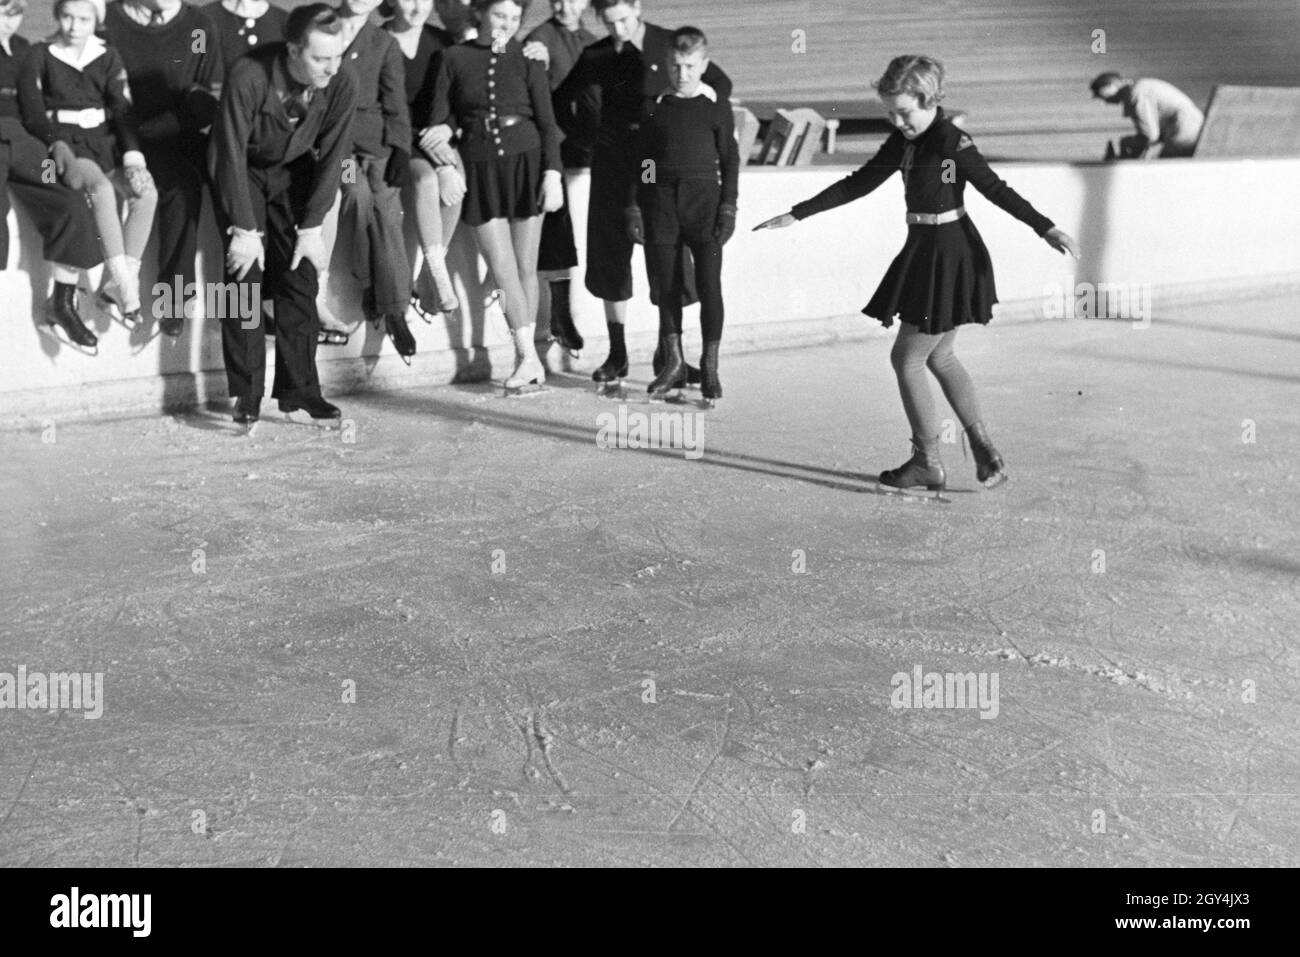 Eine Gruppe der Hitlerjugend beim Training in einem Dortmunder Eisstadion unter der Leitung vom österreichischen Eiskunstläufer und Olympiasieger Karl Schäfer, Deutschland 1930er Jahre. Eine Gruppe von Hitler Jugend Mitglieder während einer Ausbildung, trainiert durch die Österreichische figureskater und Olympiasieger Karl Schäfer in einem Eisstadion in Dortmund, Deutschland 1930. Stockfoto